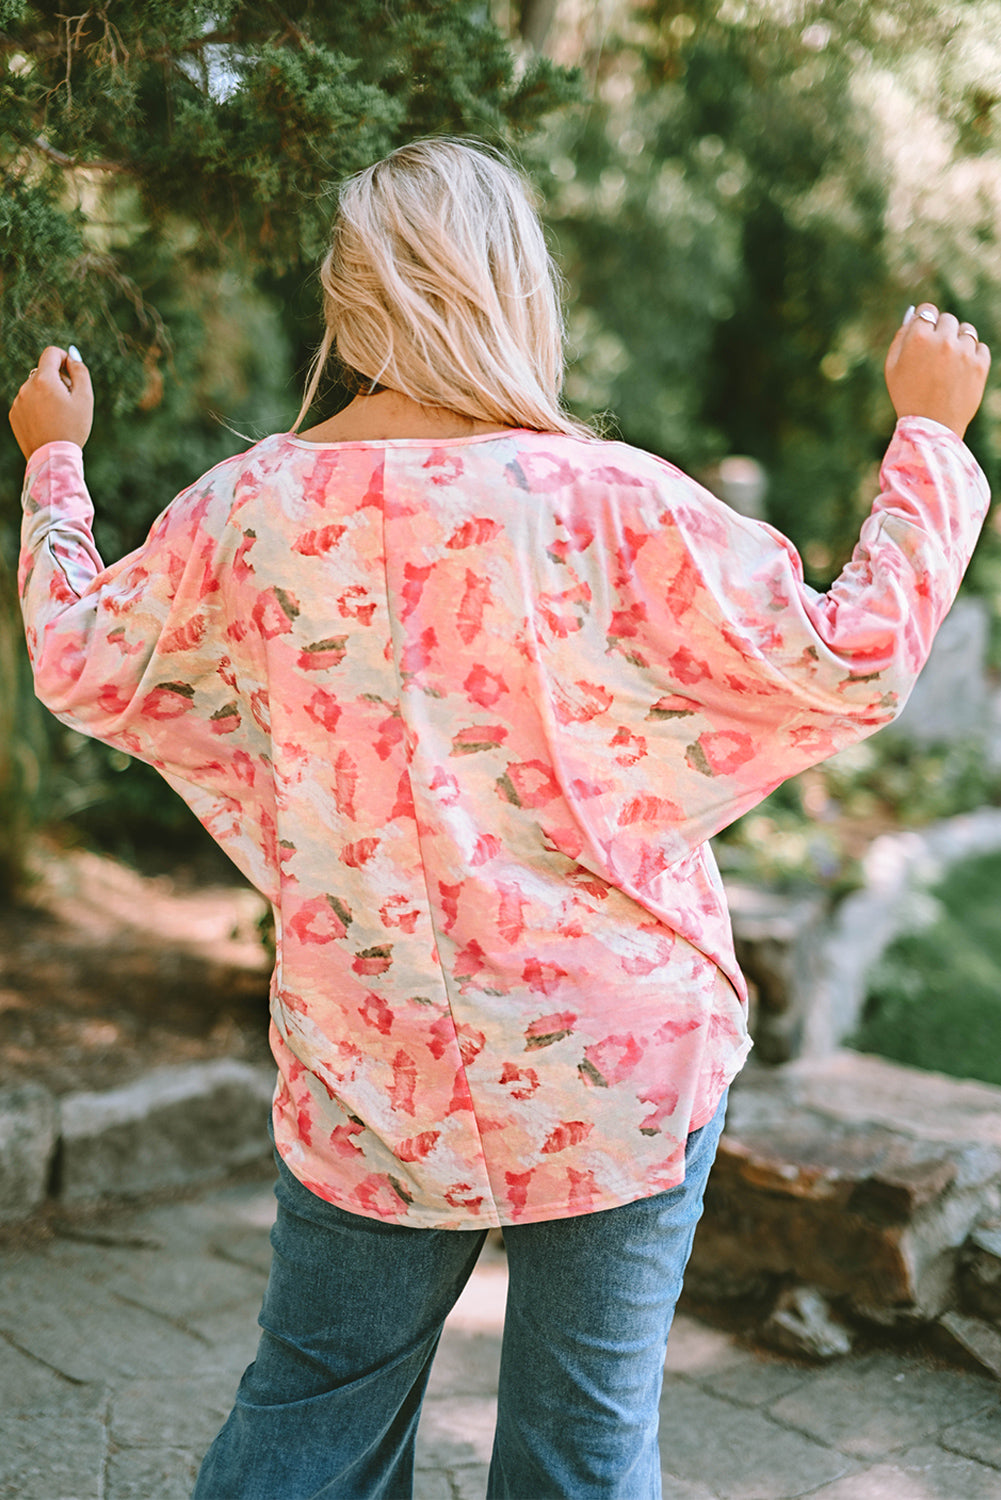 Pink Ombre Leopard Print Plus Size Knit Top